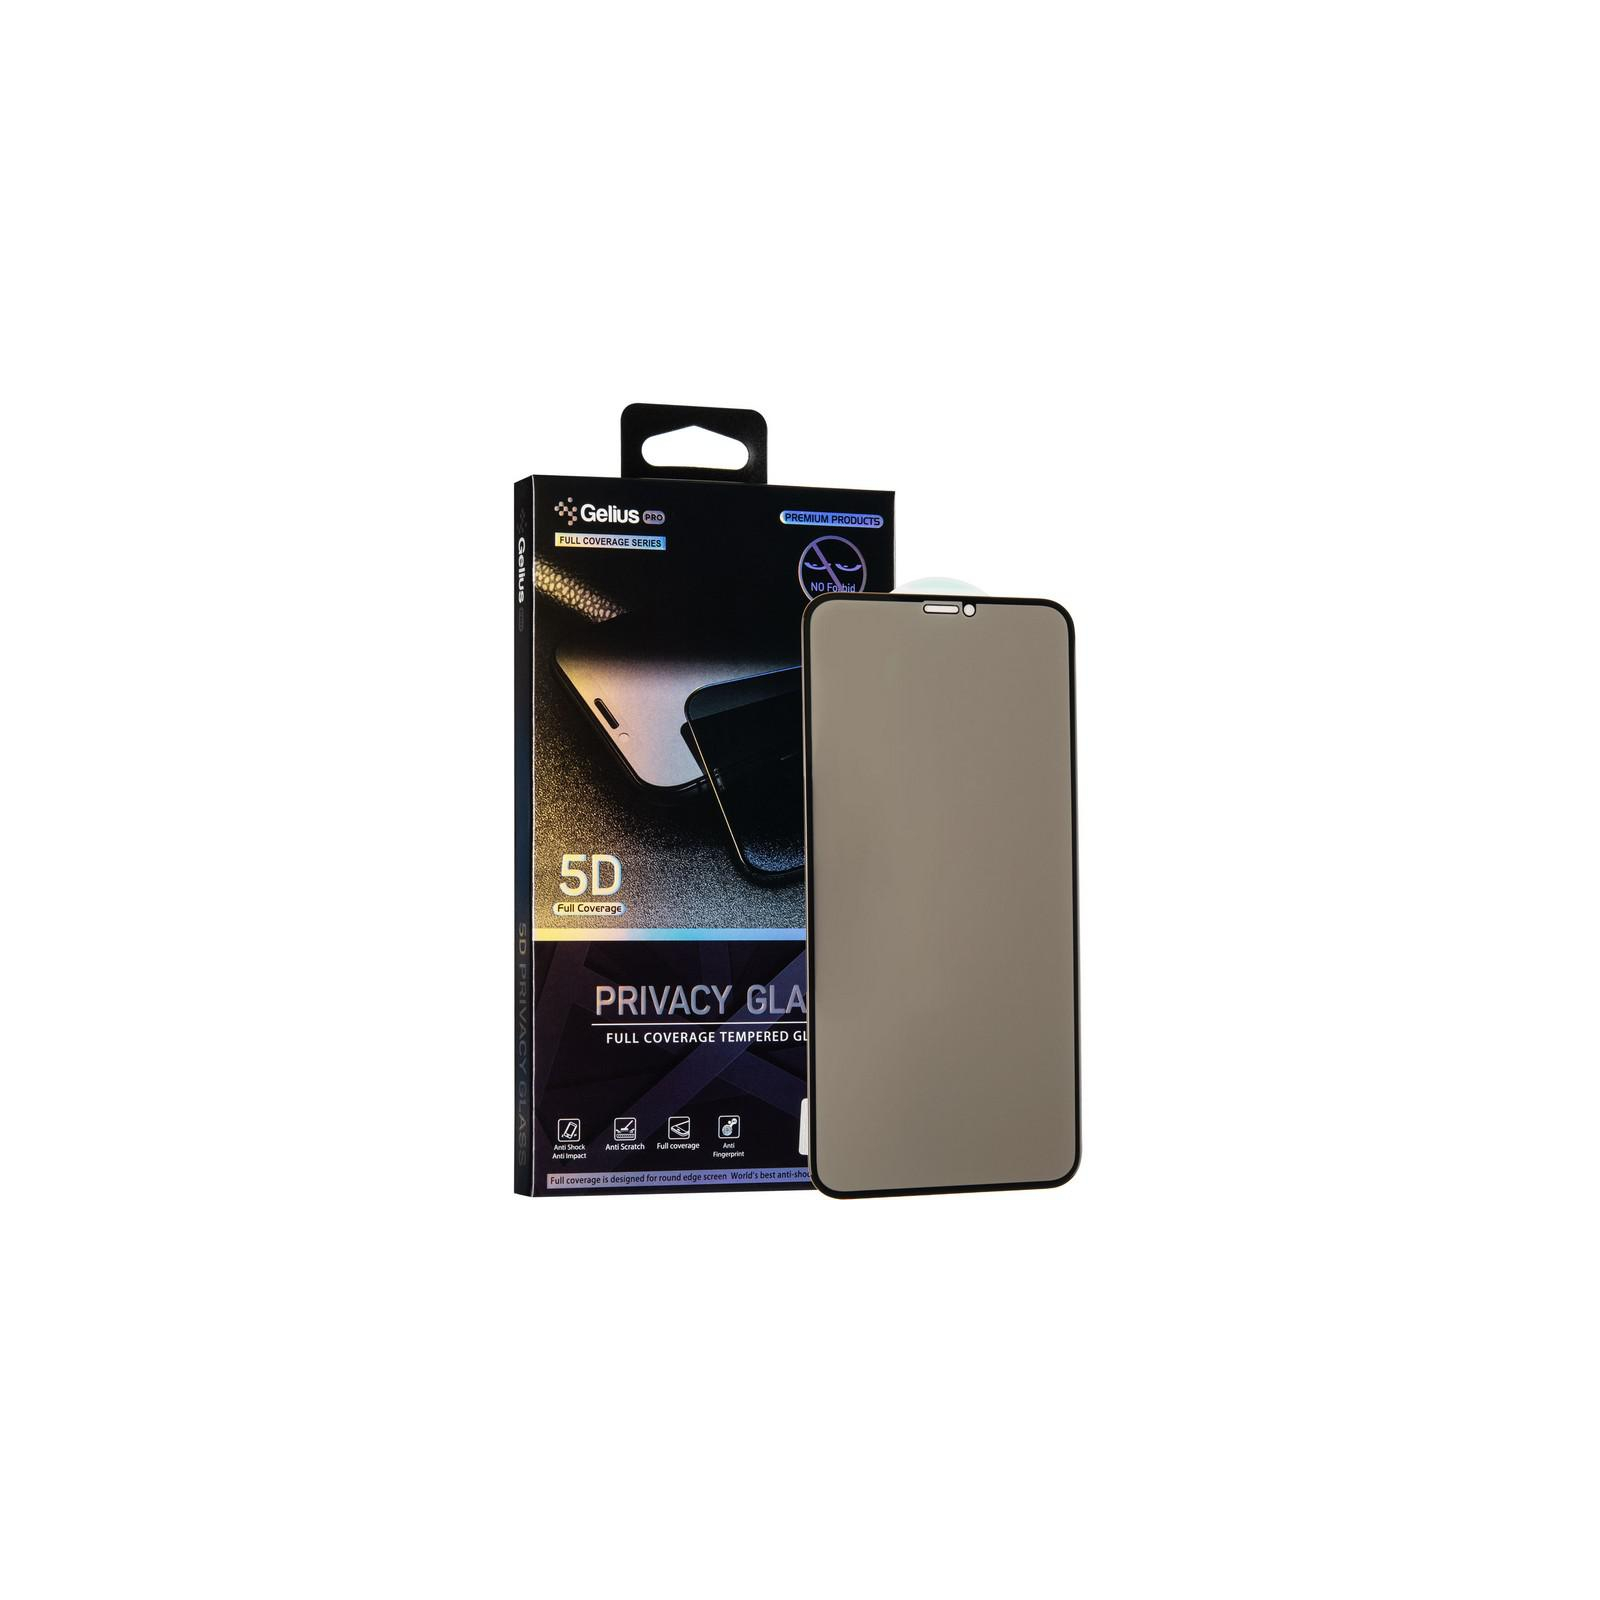 Стекло защитное Gelius Pro 5D Privasy Glass for iPhone 11 Pro Max Black (00000075729) изображение 4